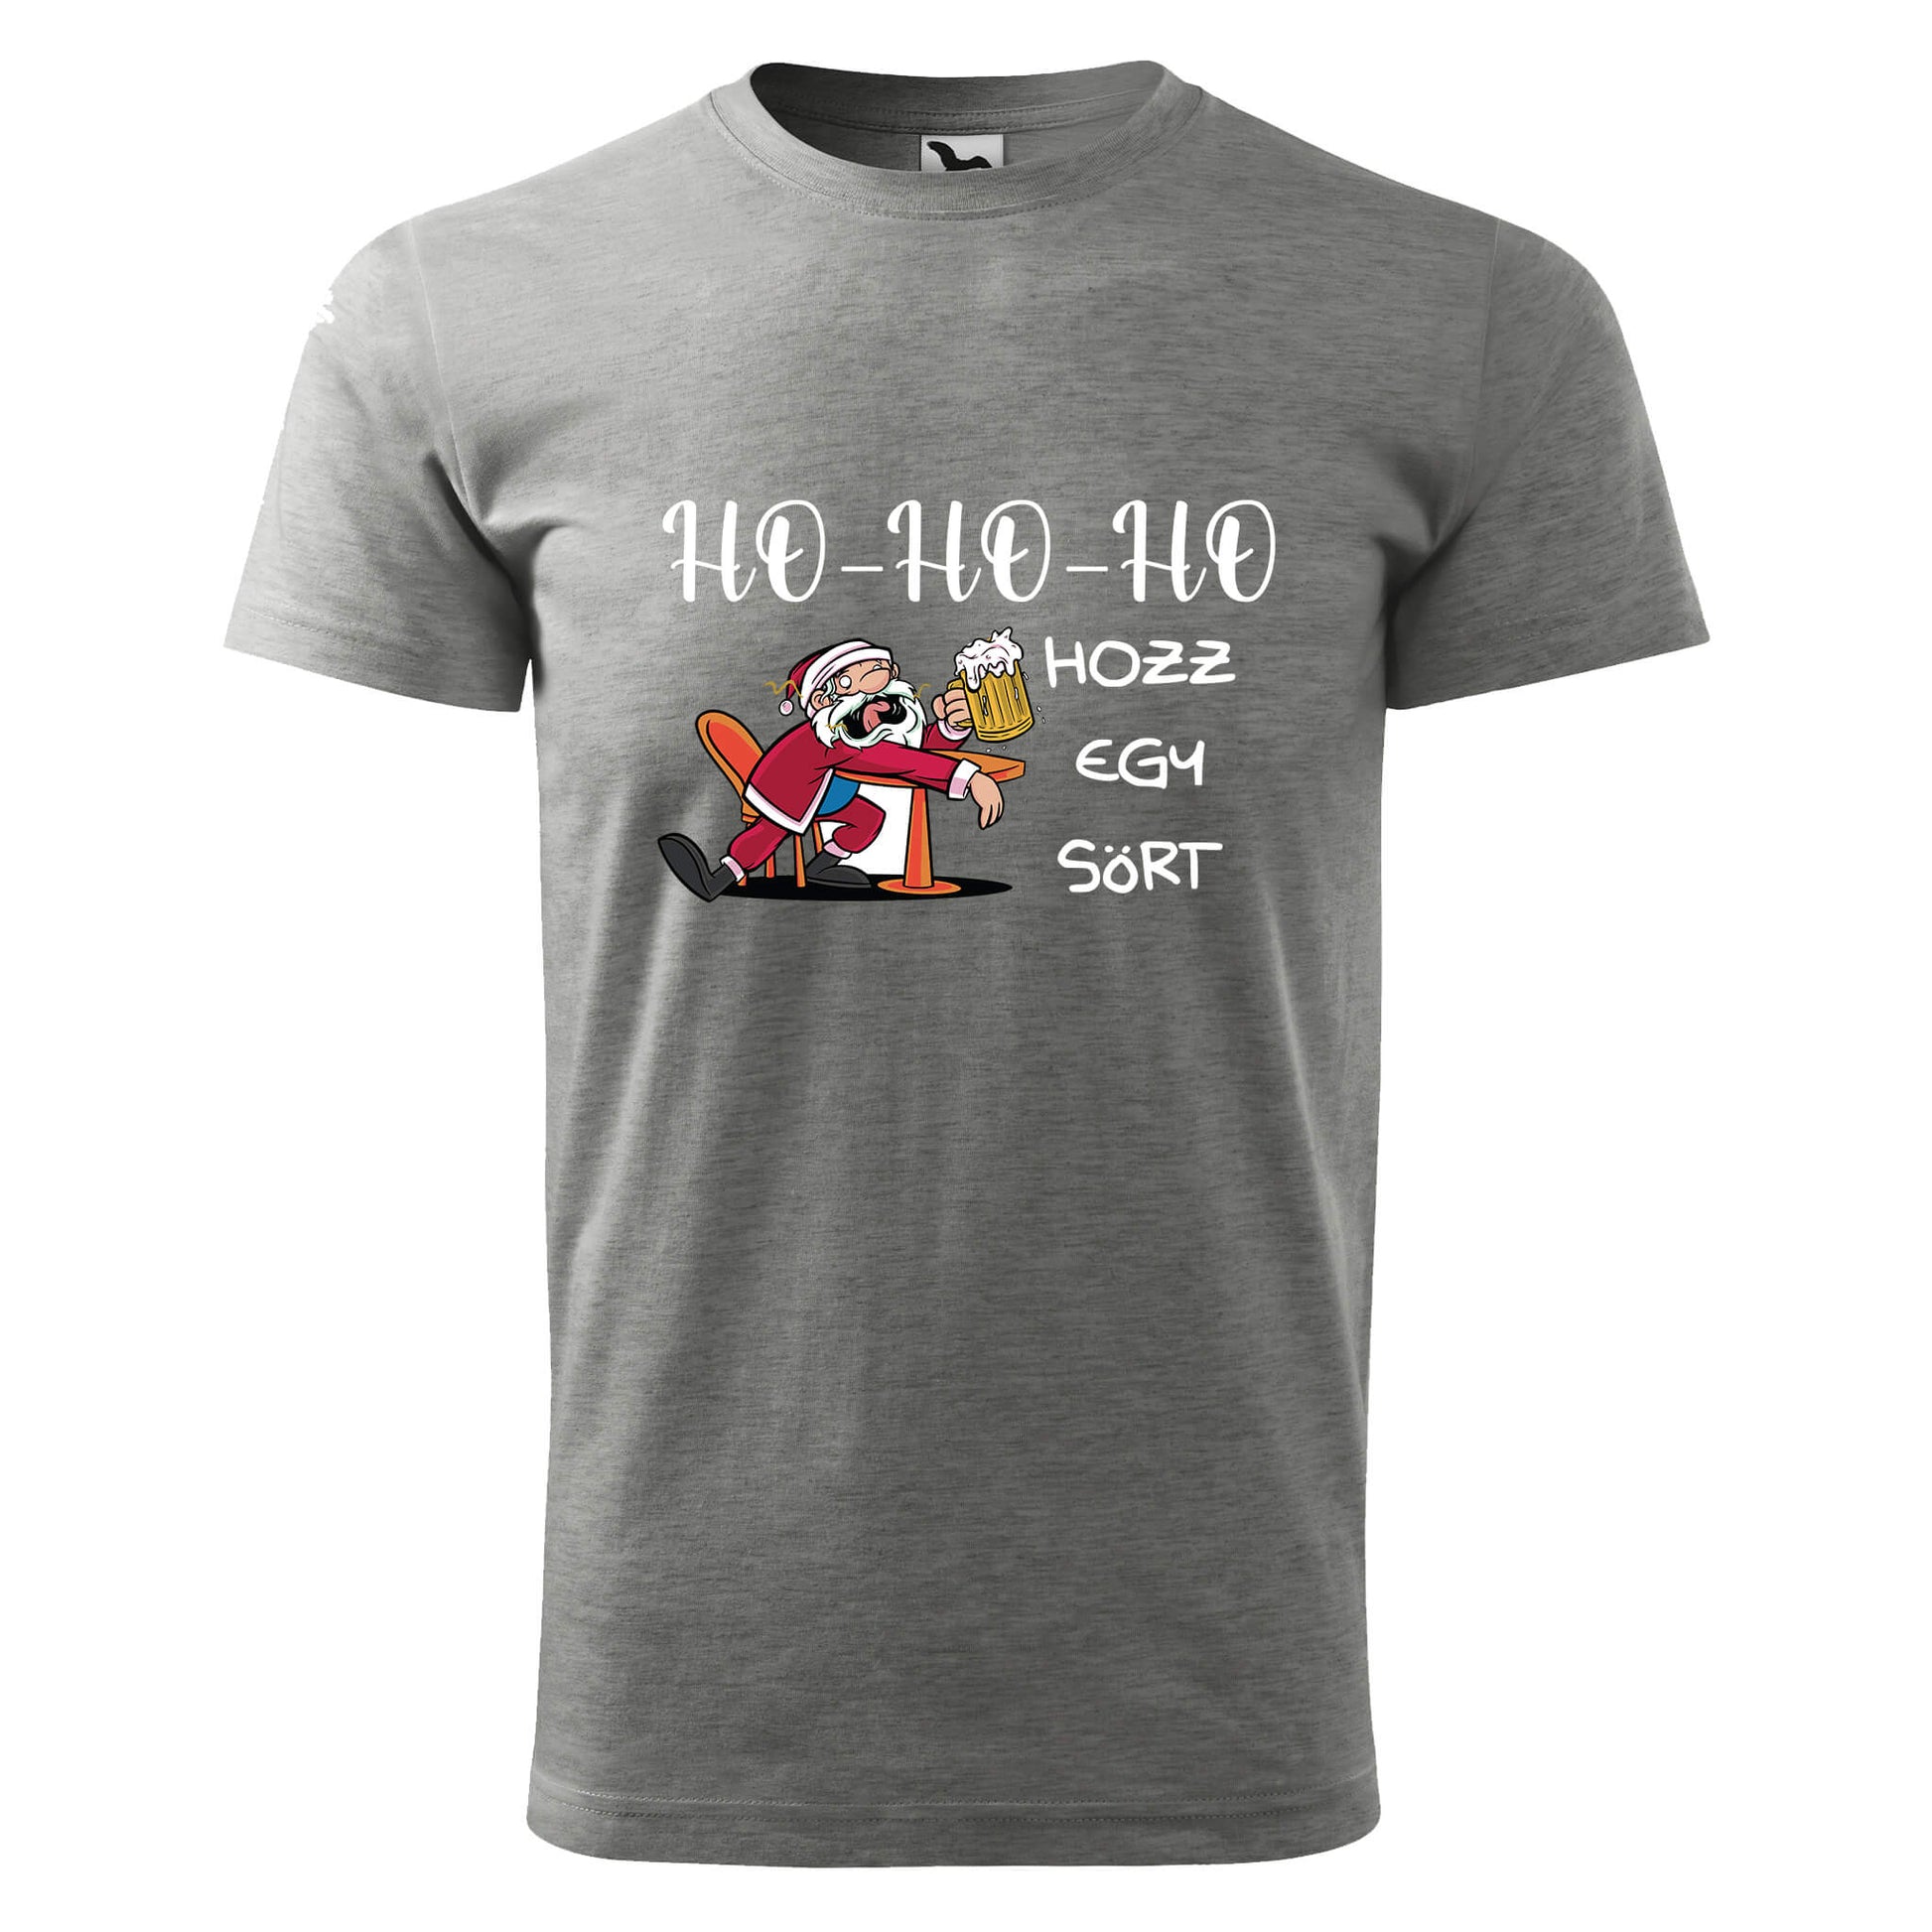 Ho-ho-ho hozz egy sort t-shirt - rvdesignprint